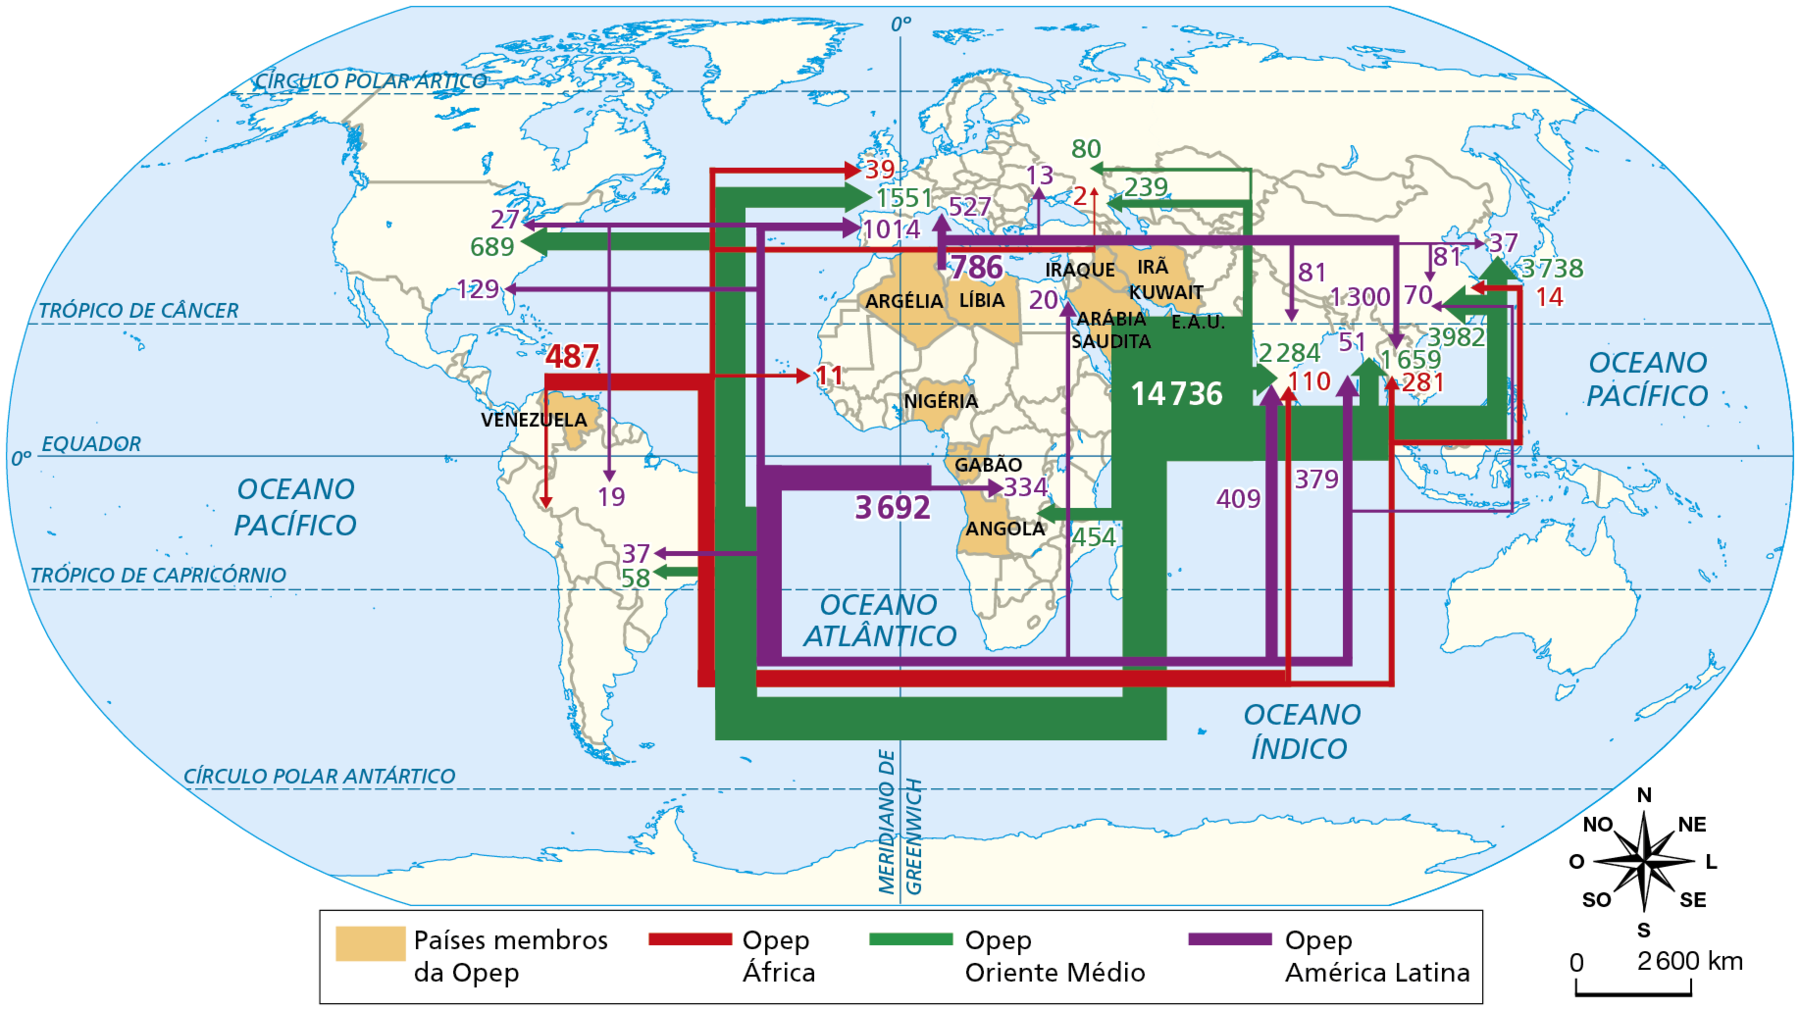 Mapa. Planisfério: Opep, fluxo de petróleo bruto, 1.000 barris por dia, 2020. Mapa representando a localização dos países membros da Opep e os fluxos de venda de petróleo bruto entre o grupo e outros países do mundo. Países membros da Opep: Venezuela, Argélia, Líbia, Nigéria, Gabão, Angola, Arábia Saudita, Iraque, Irã e Kuwait. Opep África: 487 mil barris por dia para América Latina; 110 mil barris por dia para Índia; 281 mil barris por dia para o Sudeste Asiático; 14 mil barris por dia para China; 39 mil barris por dia para Reino Unido; 2 mil barris por dia para Rússia. Opep Oriente Médio: 689 mil barris por dia para Estados Unidos; 1.551 mil barris por dia para Europa Ocidental; 239 mil barris por dia para Rússia; 80 mil barris por dia para Rússia; 3.738 mil barris por dia para Japão; 2.284 mil barris por dia para Índia; 3.982 mil barris por dia para China; 454 mil barris por dia para África. Opep América Latina: 37 mil barris por dia para Brasil; 19 mil barris por dia para Brasil; 1.014 mil barris por dia para Europa; 27 mil barris por dia para Estados Unidos; 129 mil barris por dia para Estados Unidos; 334 mil barris por dia para África; 20 mil barris por dia para Israel; 527 mil barris por dia para Europa; 70 mil barris por dia para China; 81 mil barris por dia para China; 37 mil barris por dia para Coreia do Sul; 81 mil barris por dia para Índia. 409 mil barris por dia para Índia. 379 mil barris por dia para Sudeste Asiático. 1.300 mil barris por dia para Sudeste Asiático. Na parte inferior direita, rosa dos ventos e escala de 0 a 2.600 quilômetros.